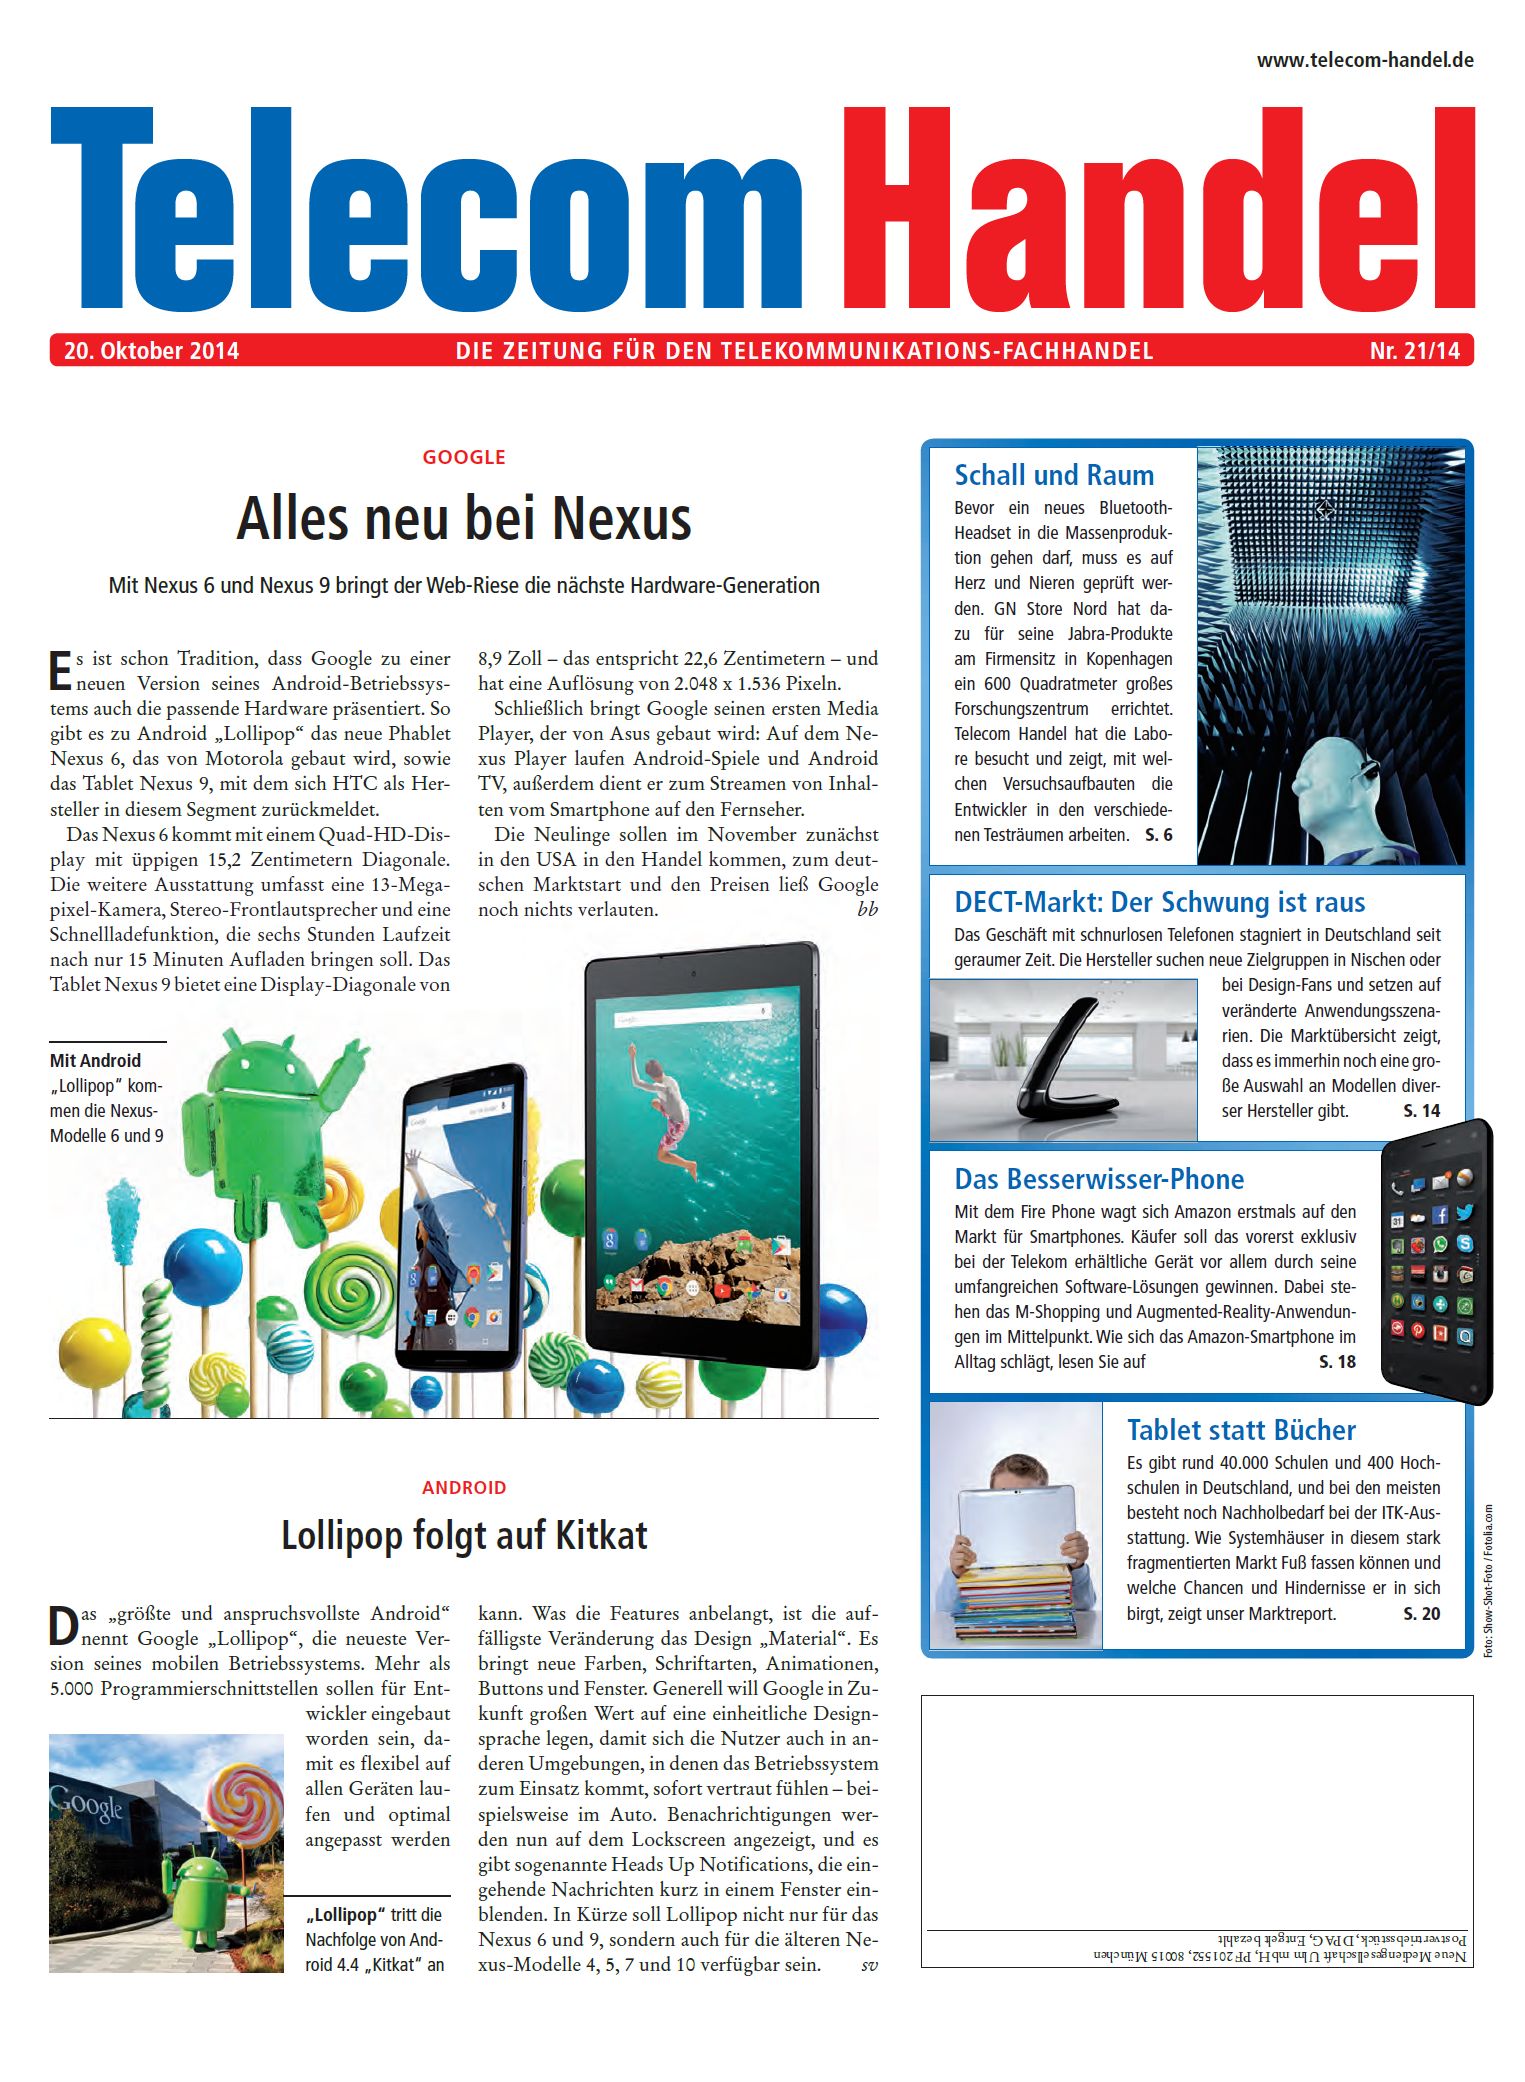 Telecom Handel Ausgabe 21/2014